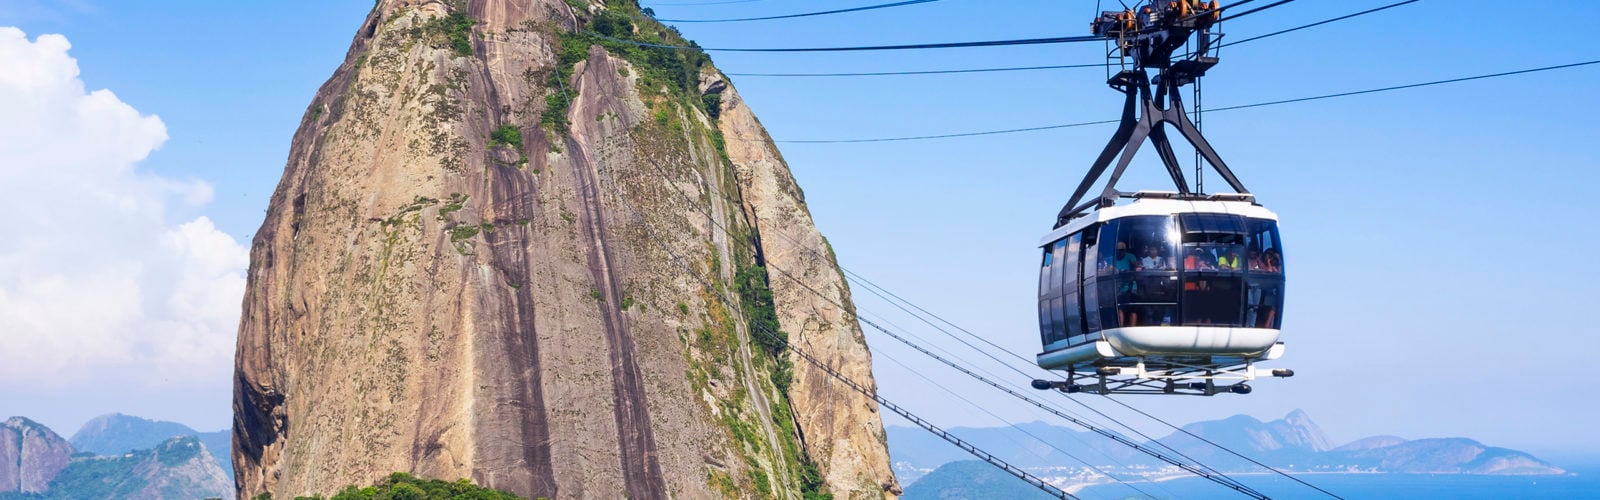 Cable Car at Sugar Loaf Mountain, Rio de Janeiro, Brazil